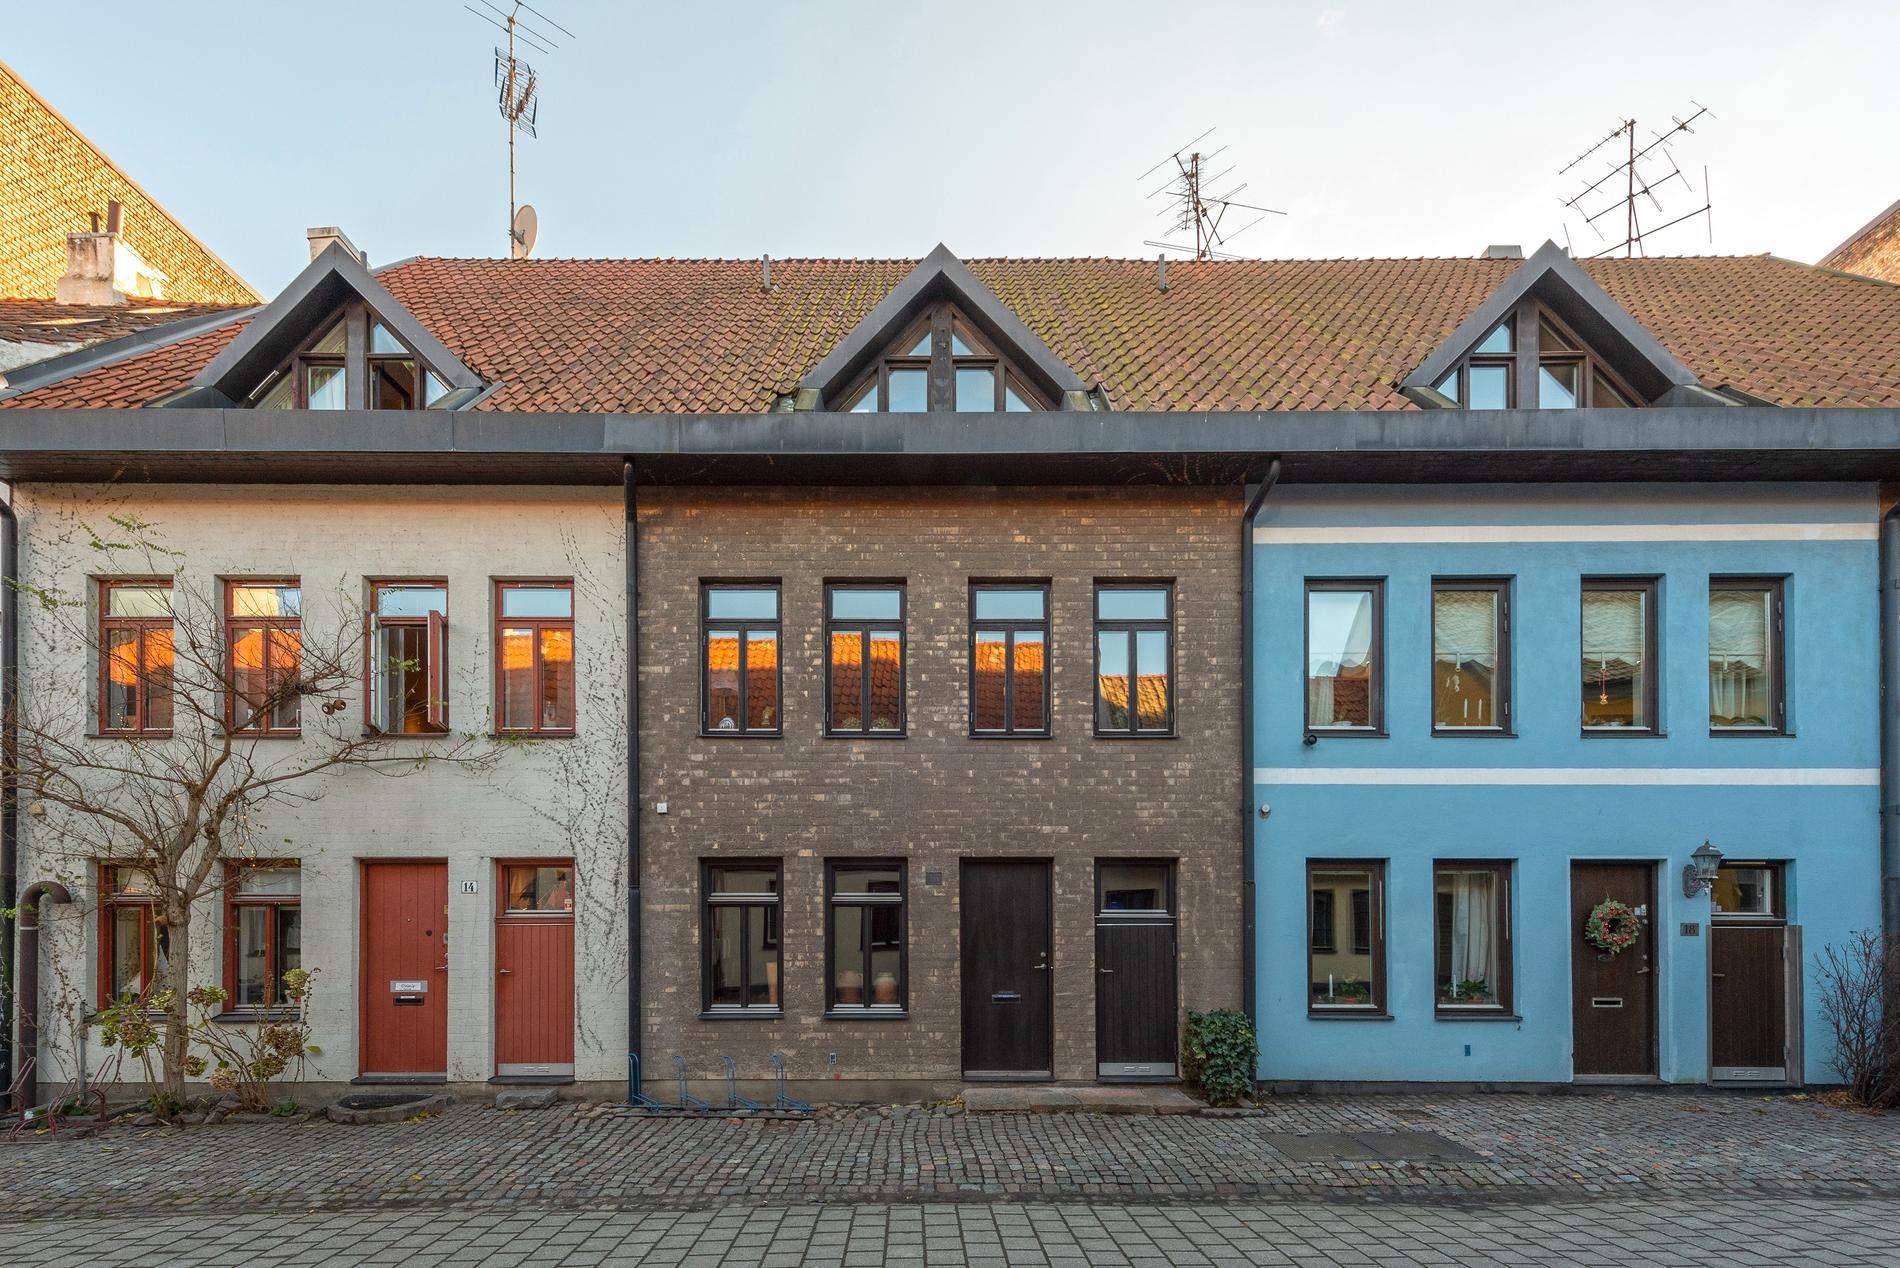 Det mittersta huset på bilden är den näst mest klickade bostaden till salu i Malmö just nu. 